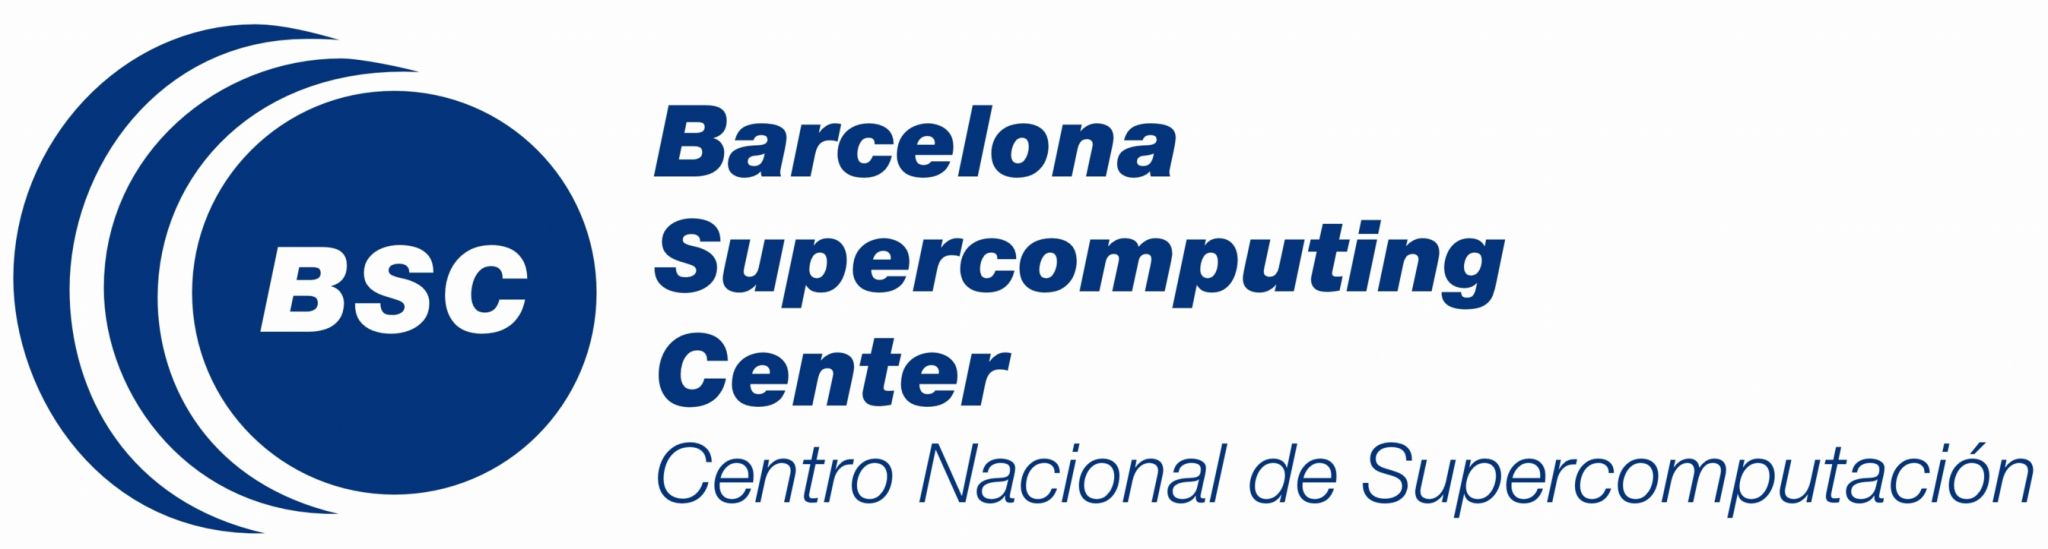 http://www.net4info.de/photos/cpg/albums/userpics/10002/Barcelona_Supercomputing_Center.jpg